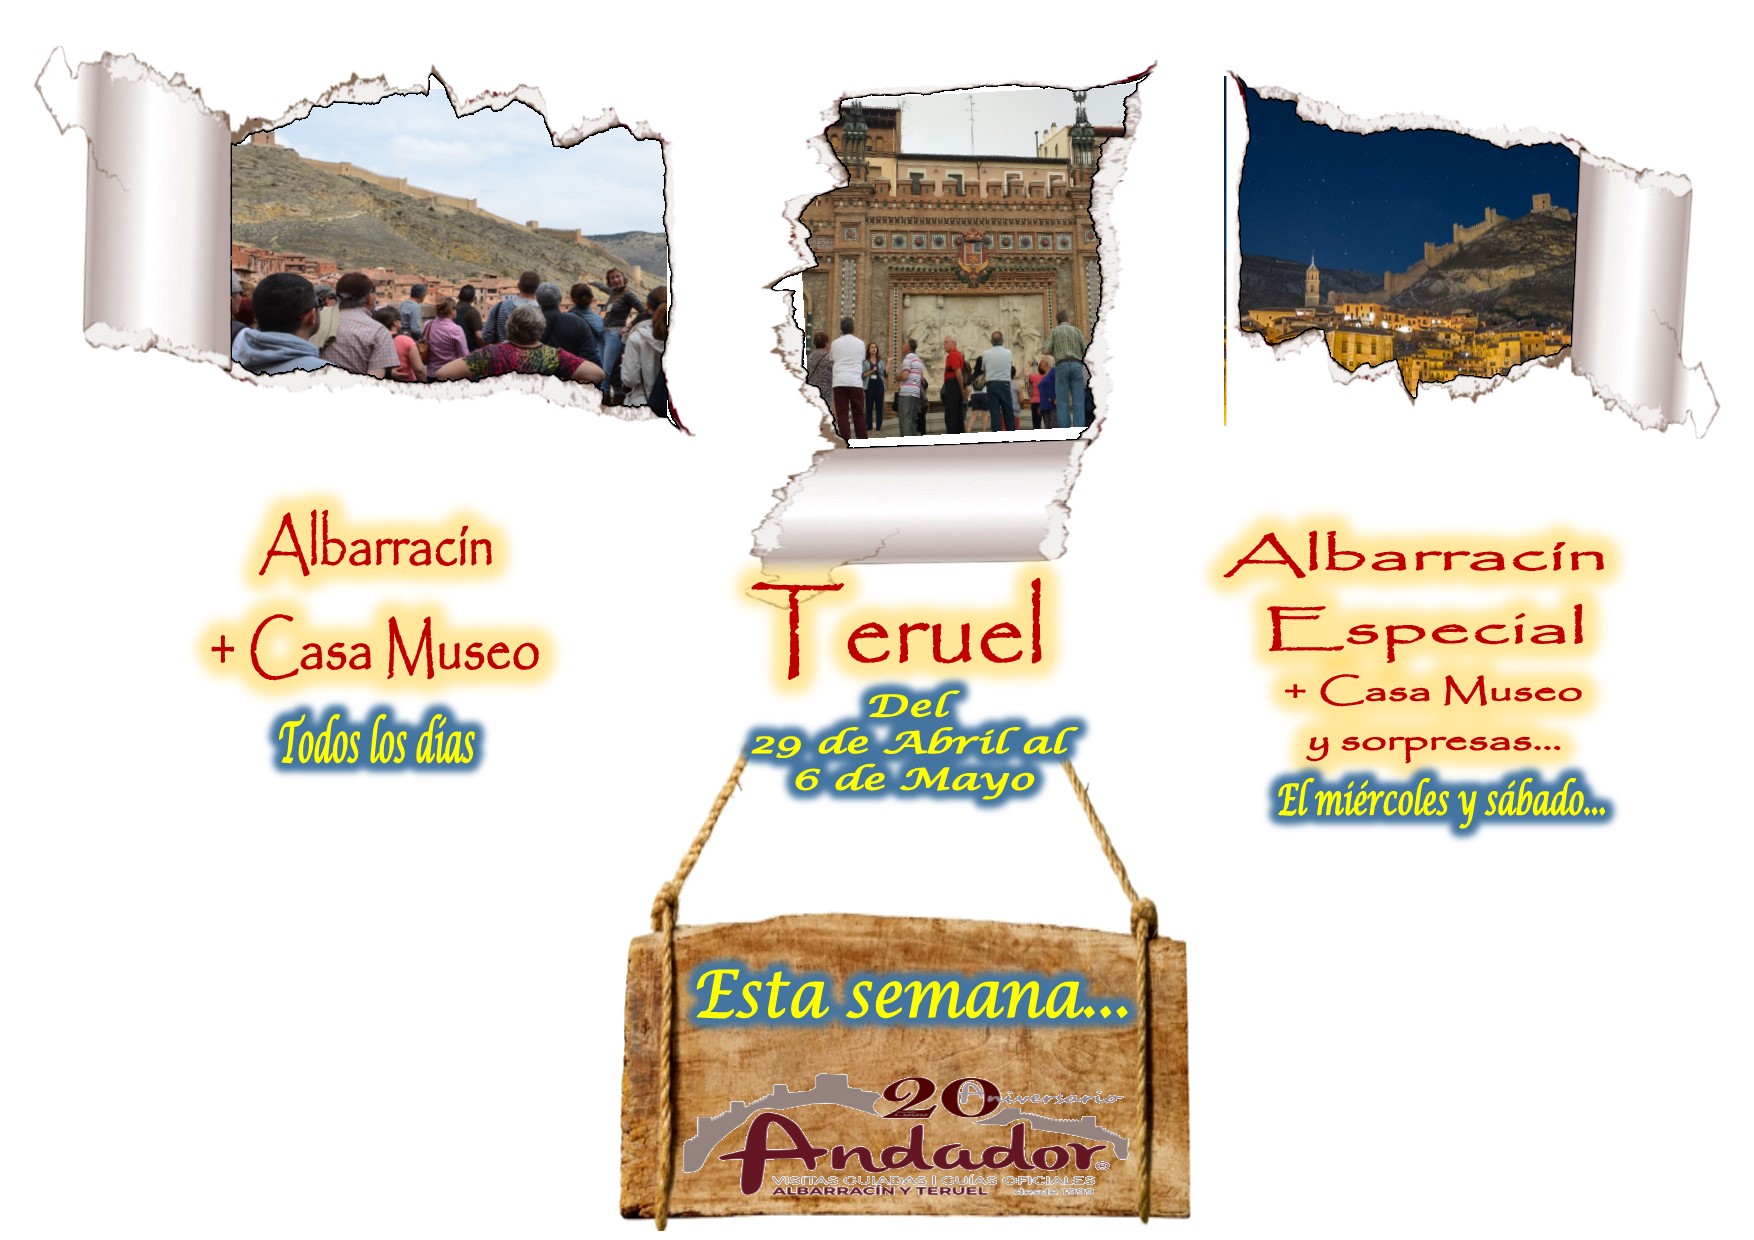 Esta semana…Albarracín y Teruel….el 1 y 4 de Mayo…Albarracín Especial con sorpresas!